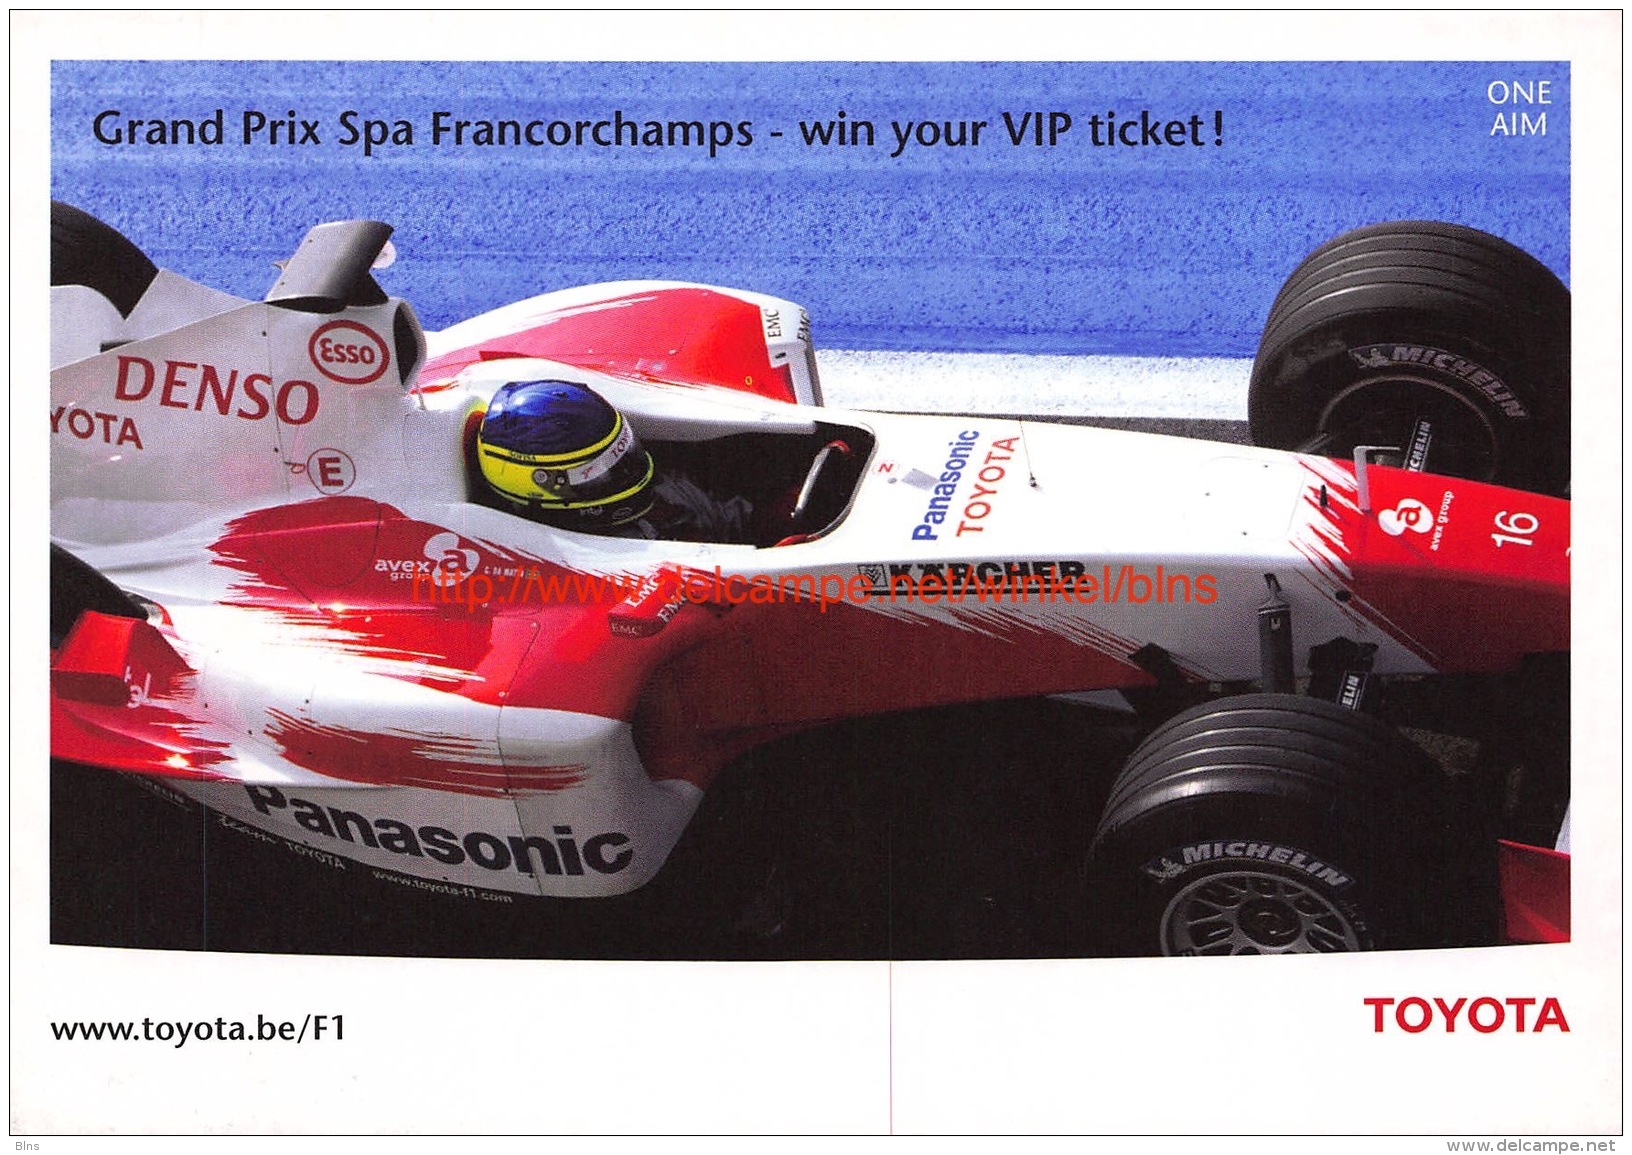 Toyota F1 Grand Prix Spa-Francorchamps - Grand Prix / F1